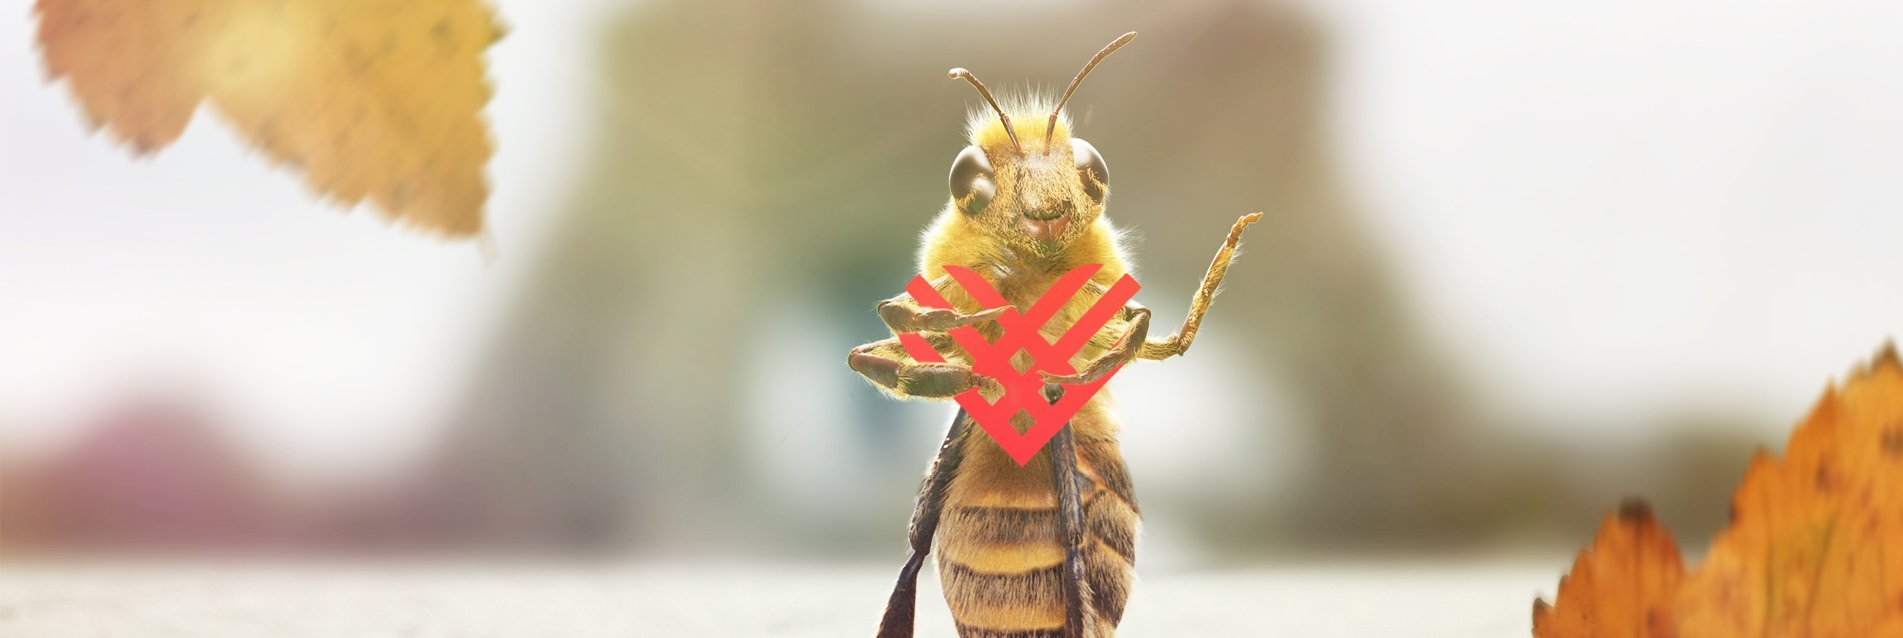 B. et la Fondation de France lancent un appel pour sauver les abeilles !